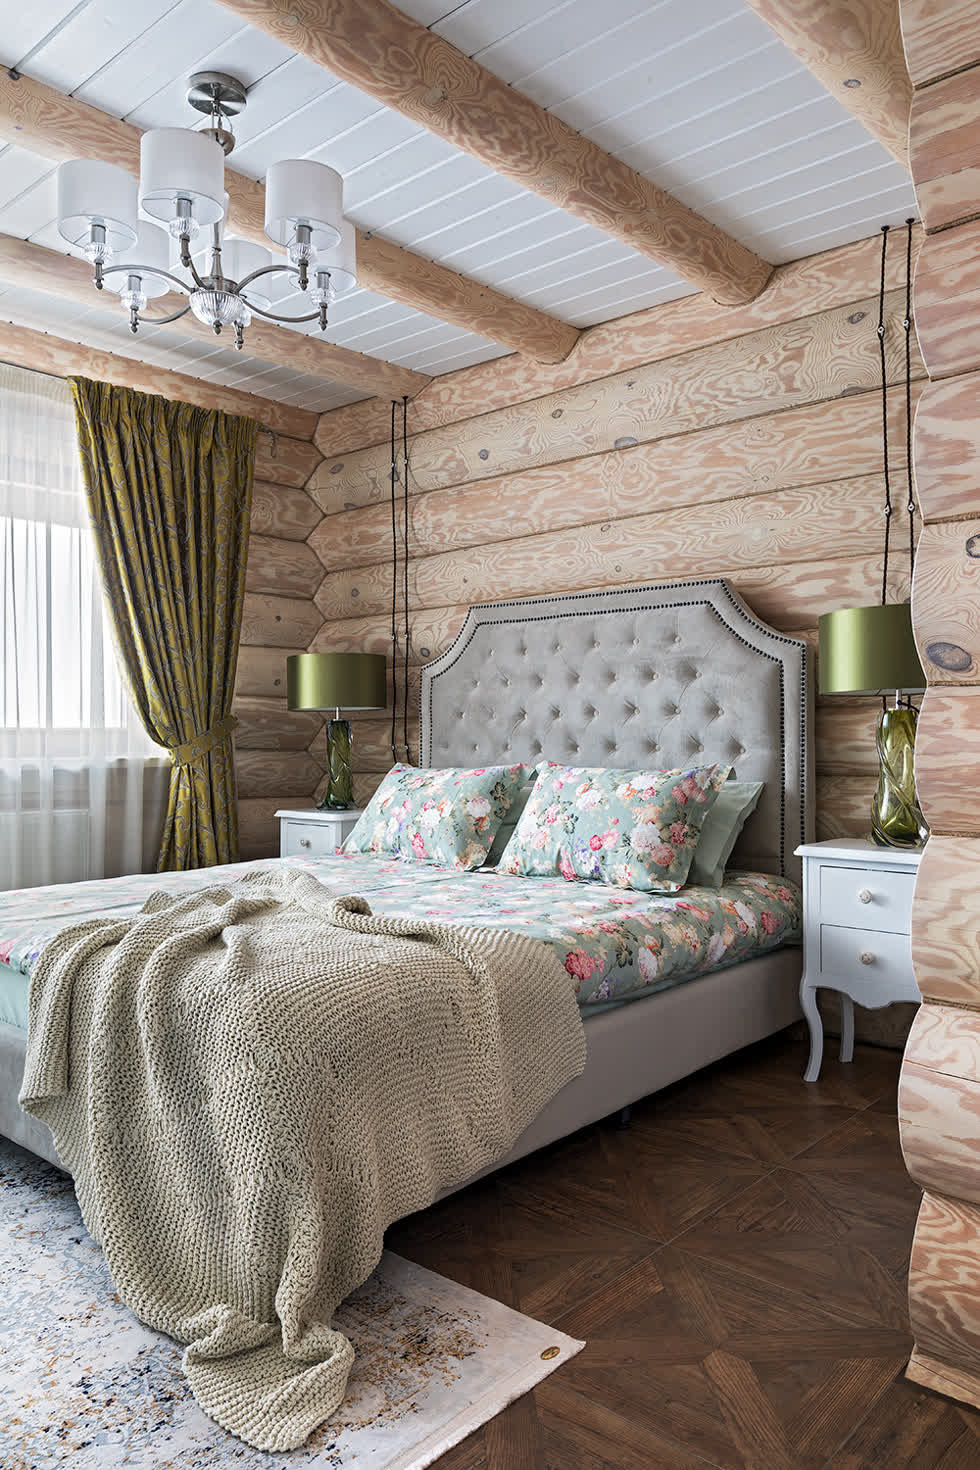 Phòng ngủ hiện đại mộc mạc tuyệt đẹp bằng gỗ và màu trắng với một chút màu xanh lá cây được pha trộn với nhau.